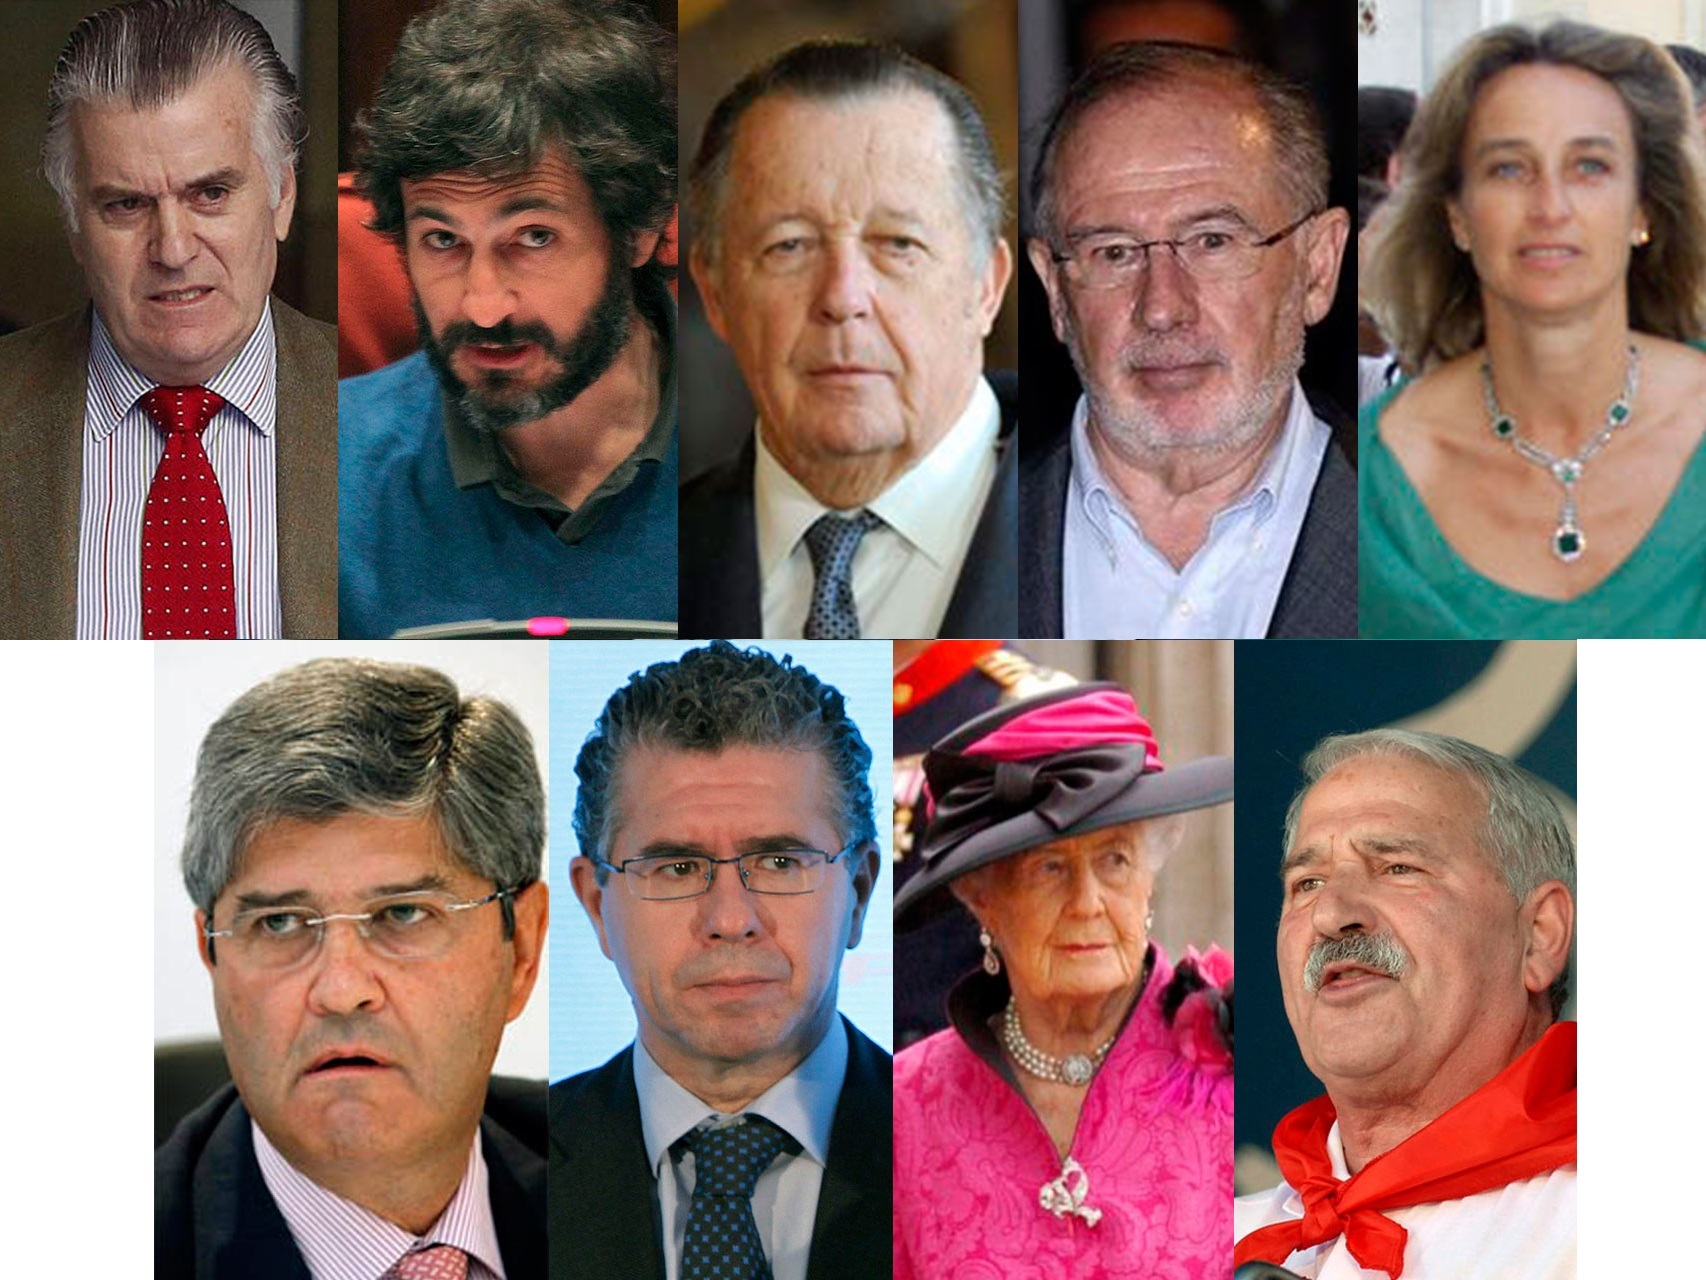 Los rostros más conocidos de los defraudadores que se acogieron a la amnistía fiscal.